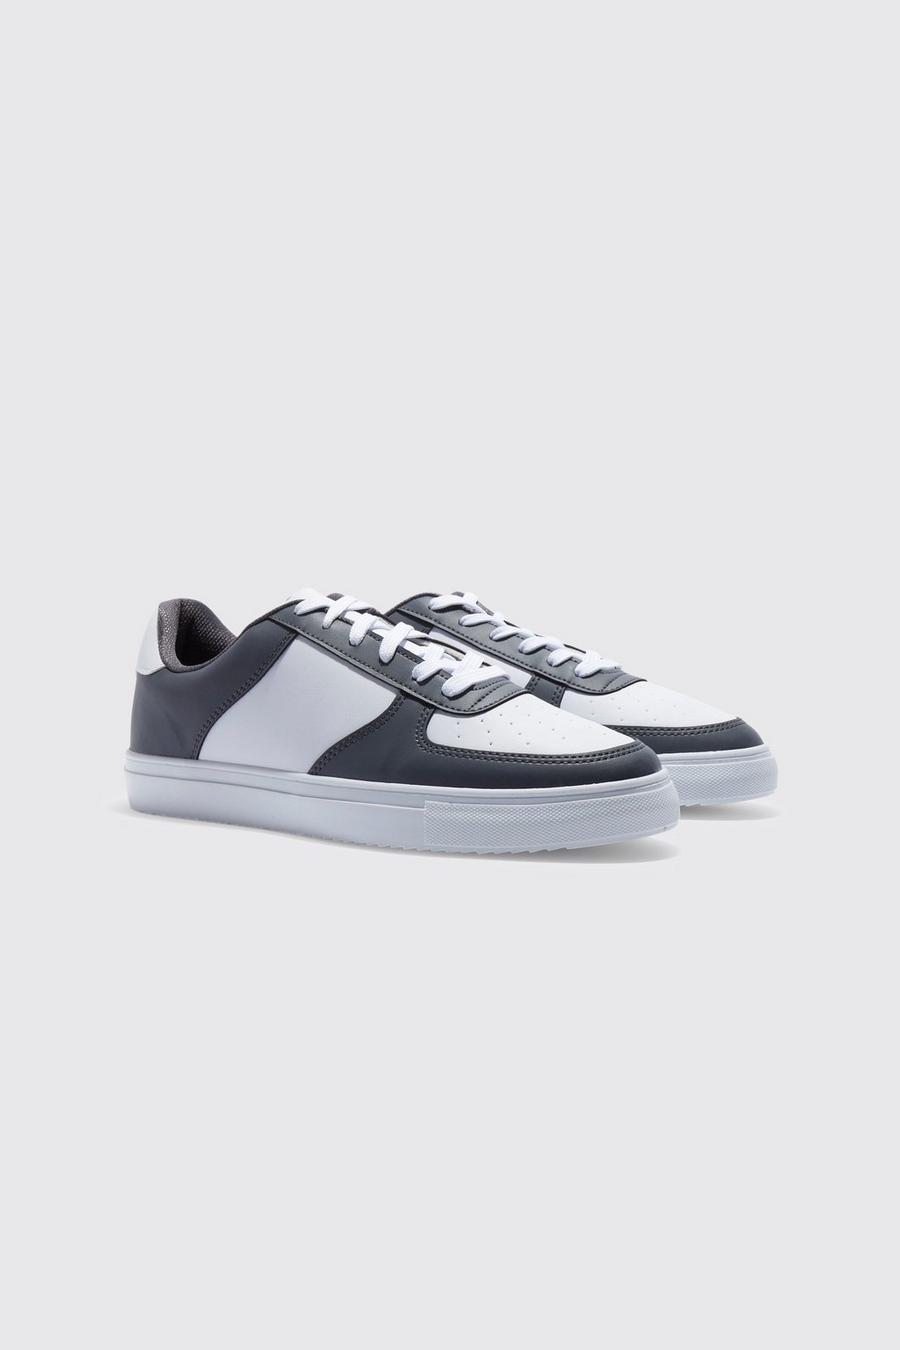 פחם grey נעלי ספורט עם פאנל בצבע מנוגד